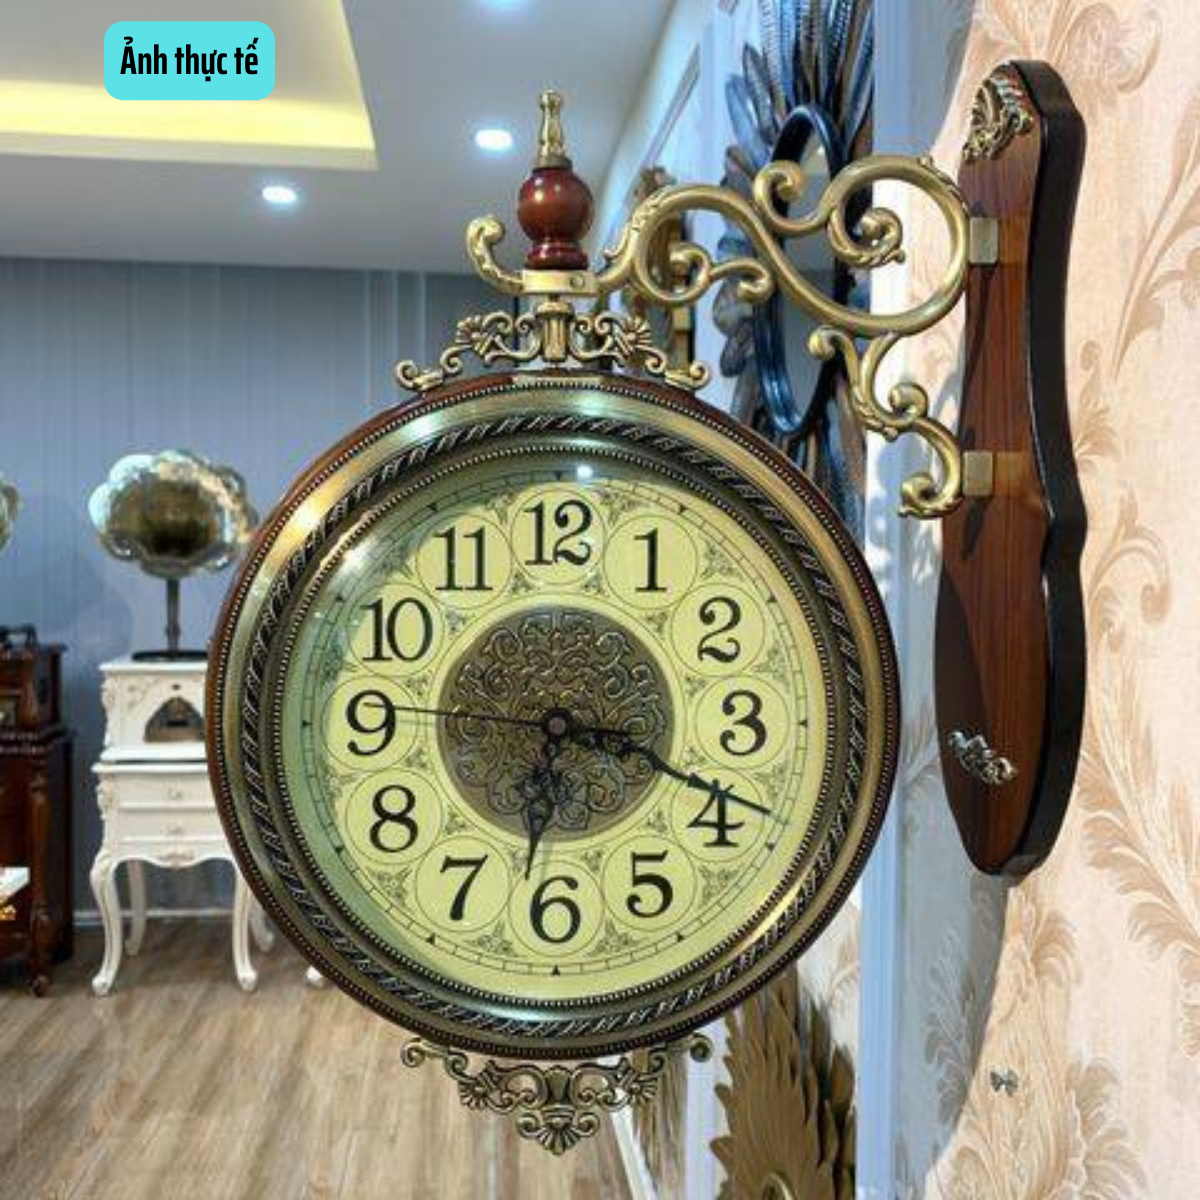 Đồng hồ treo tường 2 mặt, phong cách Châu Âu, khung gỗ sồi Nga, mặt kính sáng bóng sang trọng, Đồng hồ tân cổ điển mã DH24